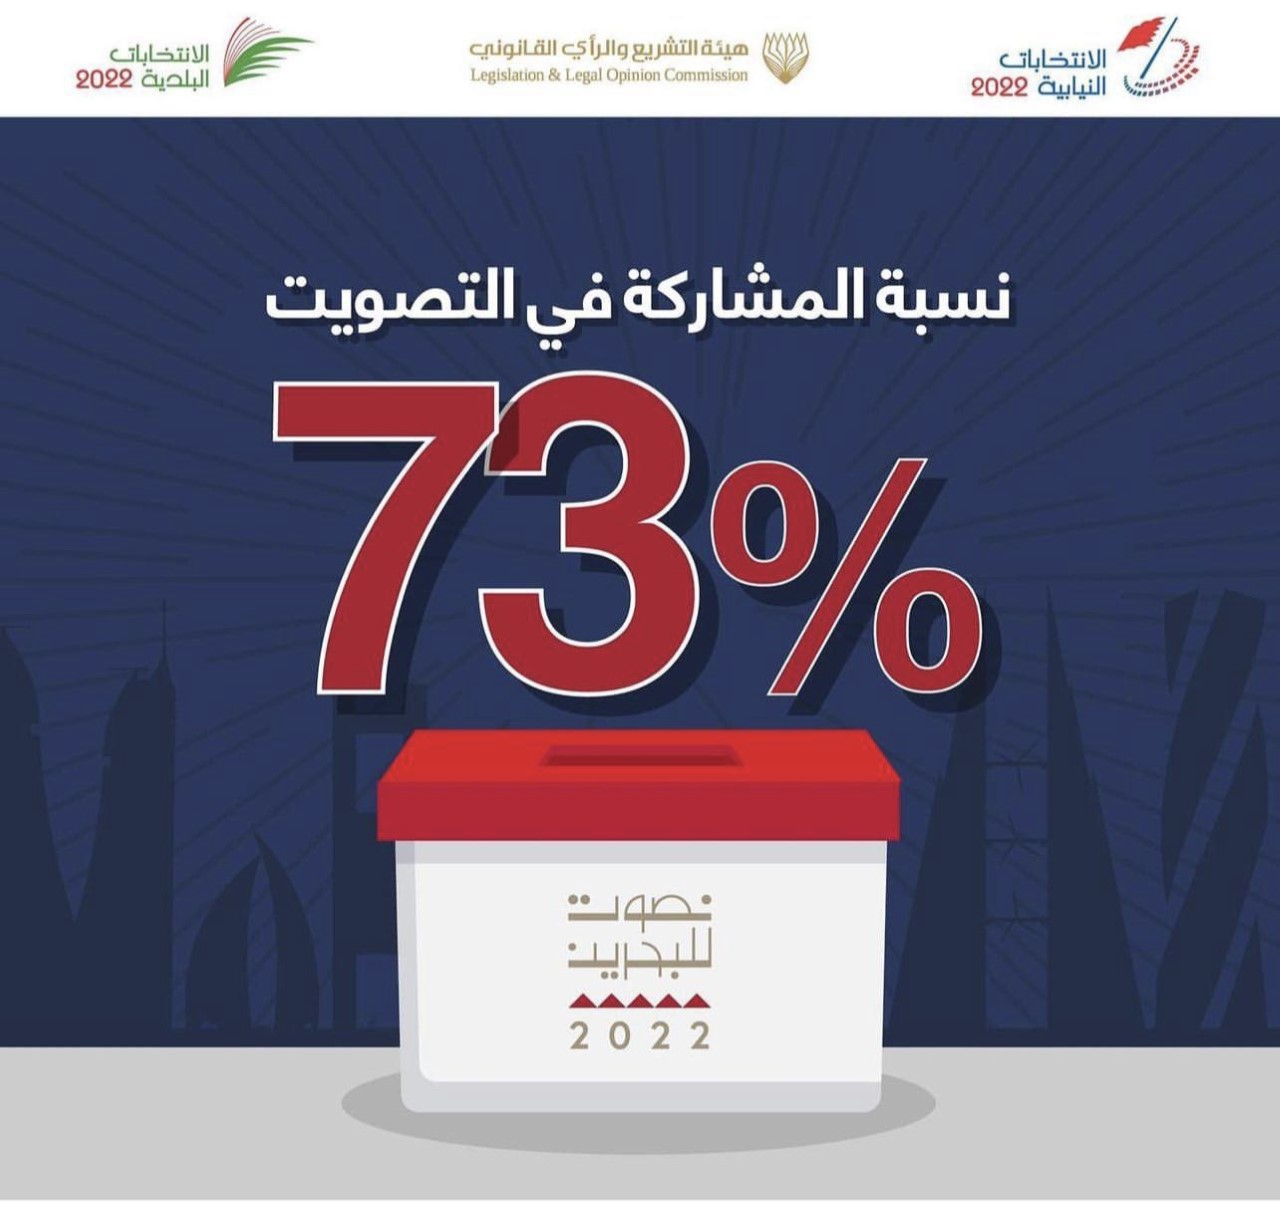 البحرين.. نسبة المشاركة في الإنتخابات النيابية والبلدية 73 بالمئة وهي الأعلى بتاريخ المملكة